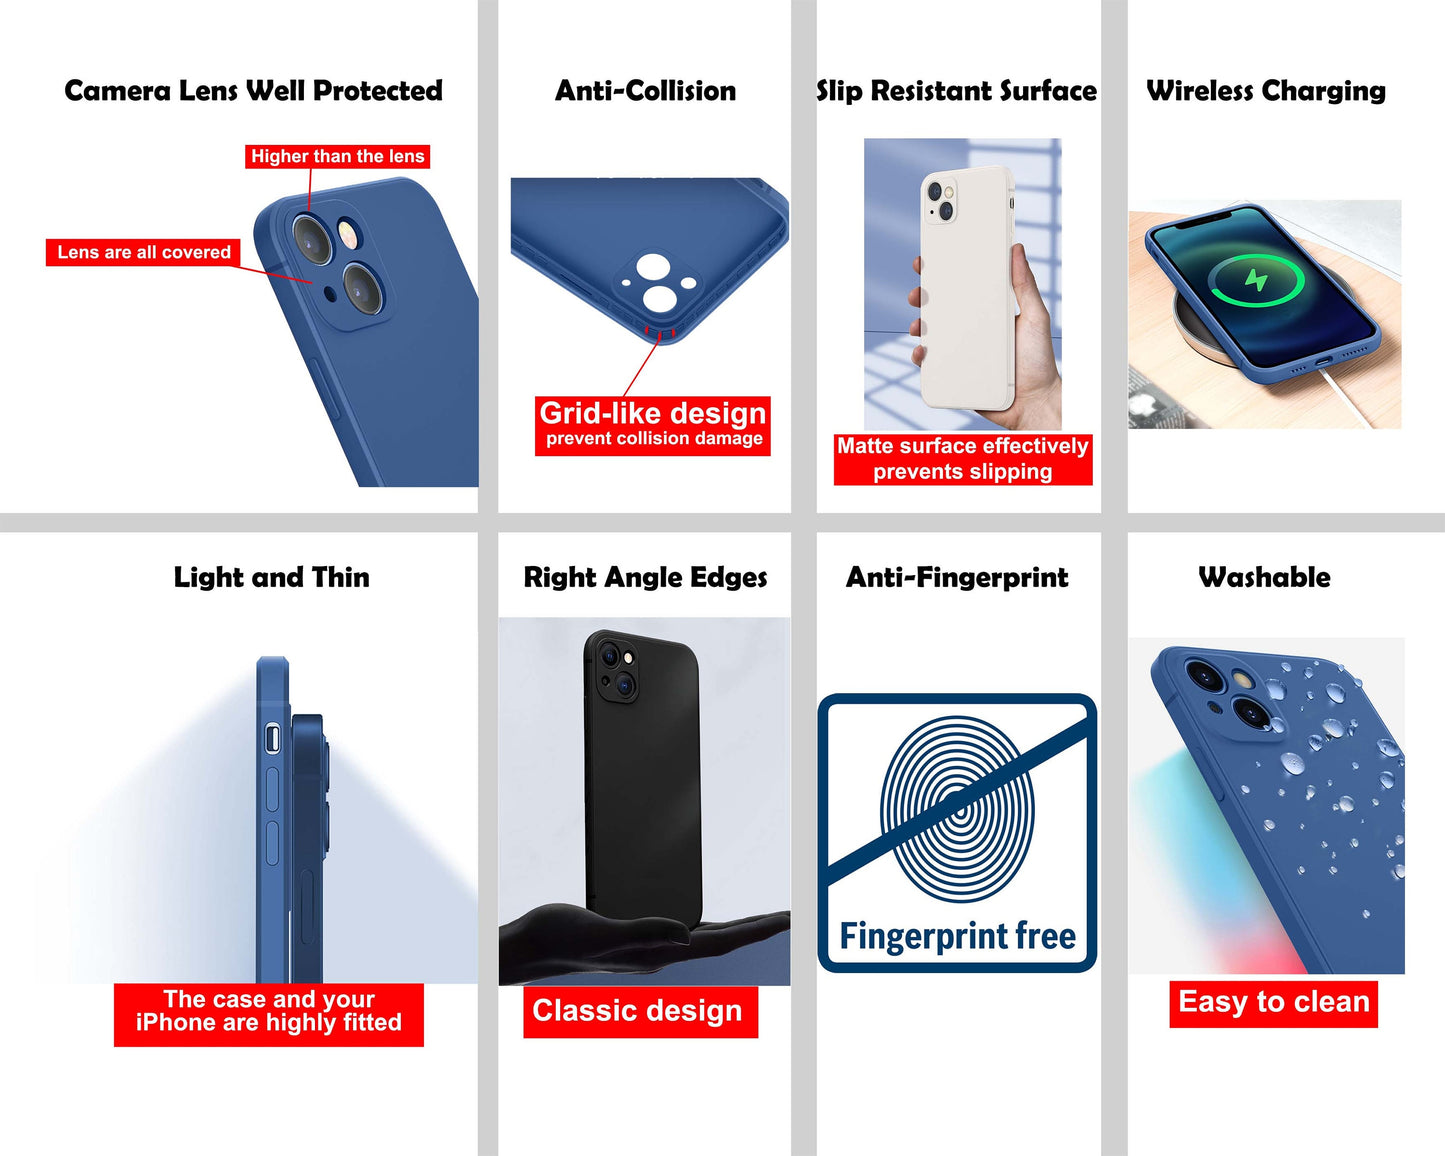 Abstract Original Art Iphone Case, Iphone 11 Case, Iphone Xmax, Iphone 8 Plus Case Art, Vivid Colors, Designer Iphone 8 Plus Case